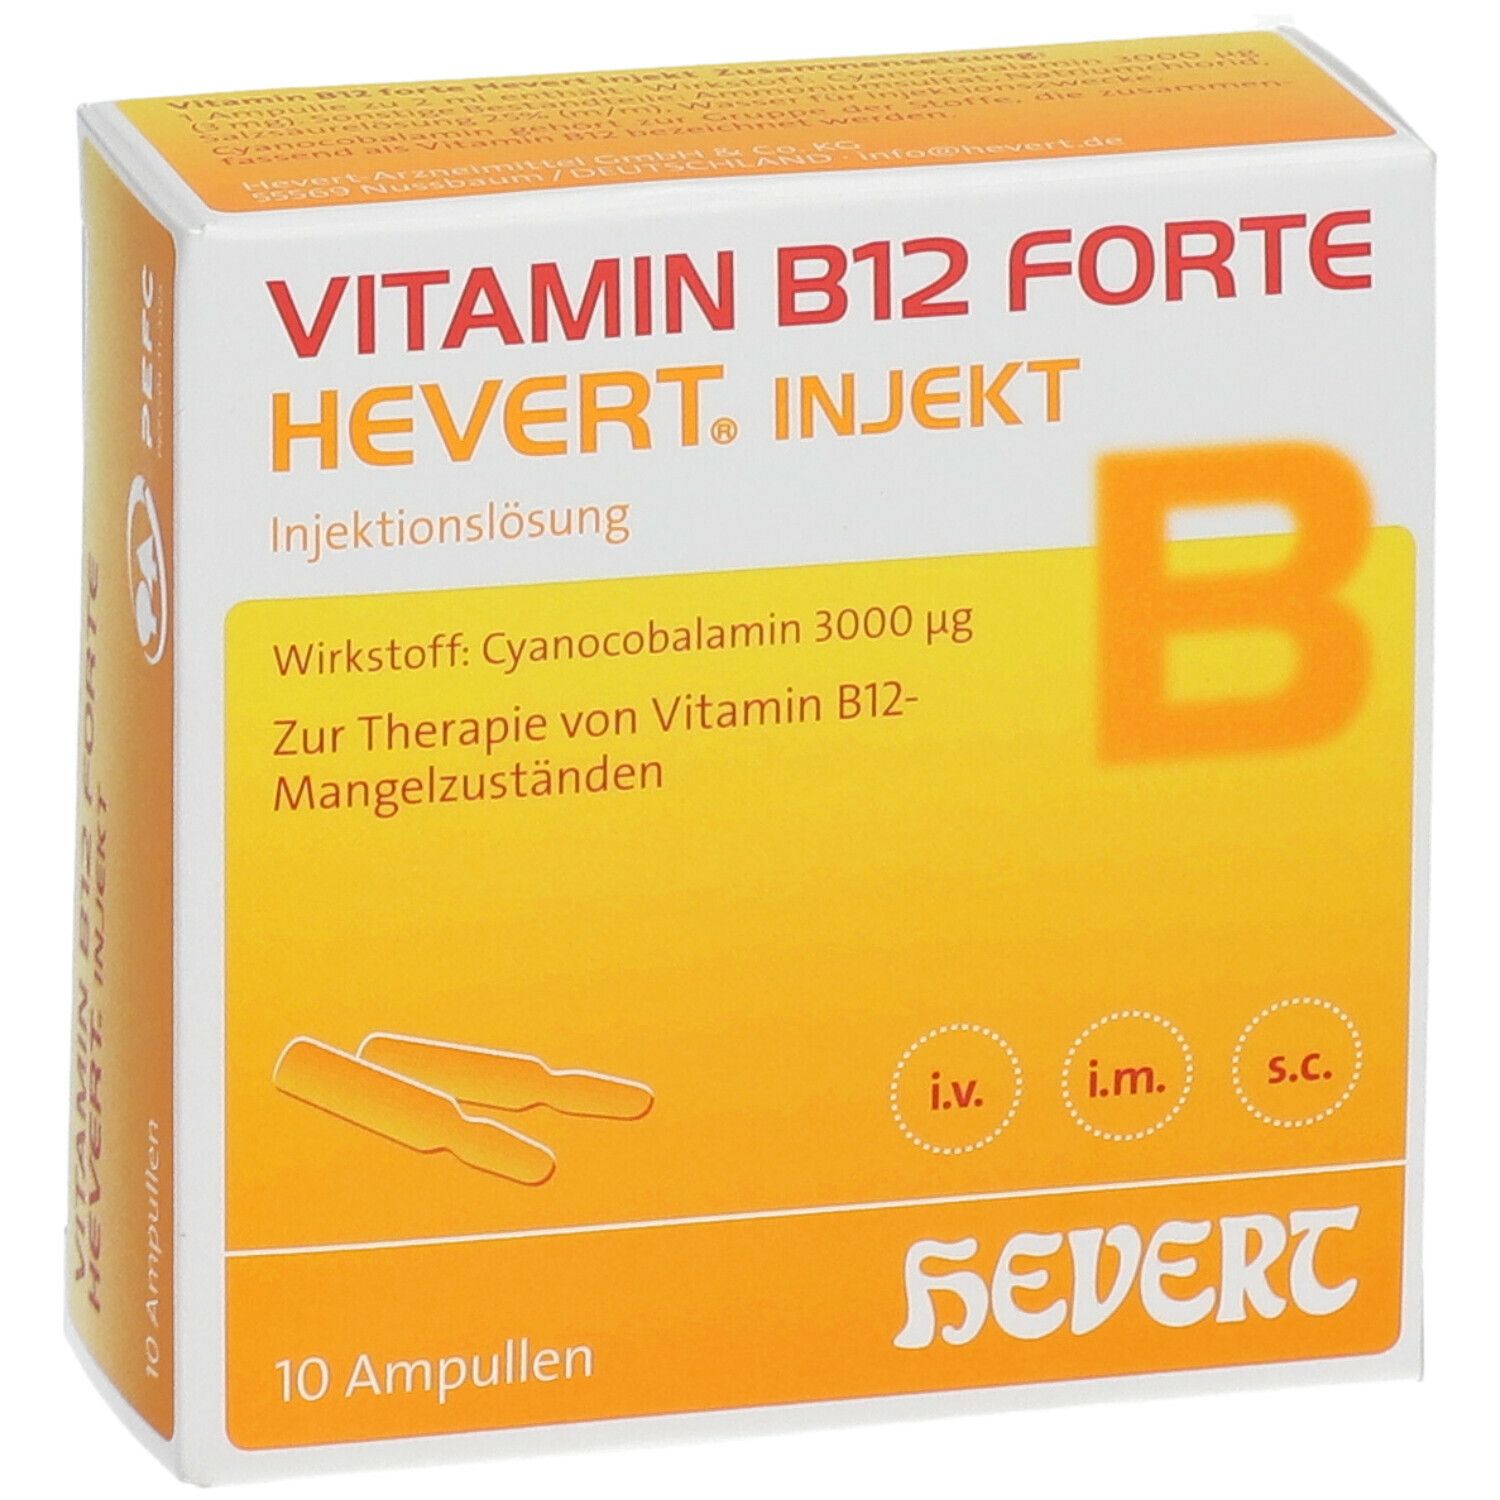 solide Het kantoor Centimeter Vitamin B 12 forte-Hevert injekt Ampullen 10x2 ml - shop-apotheke.com